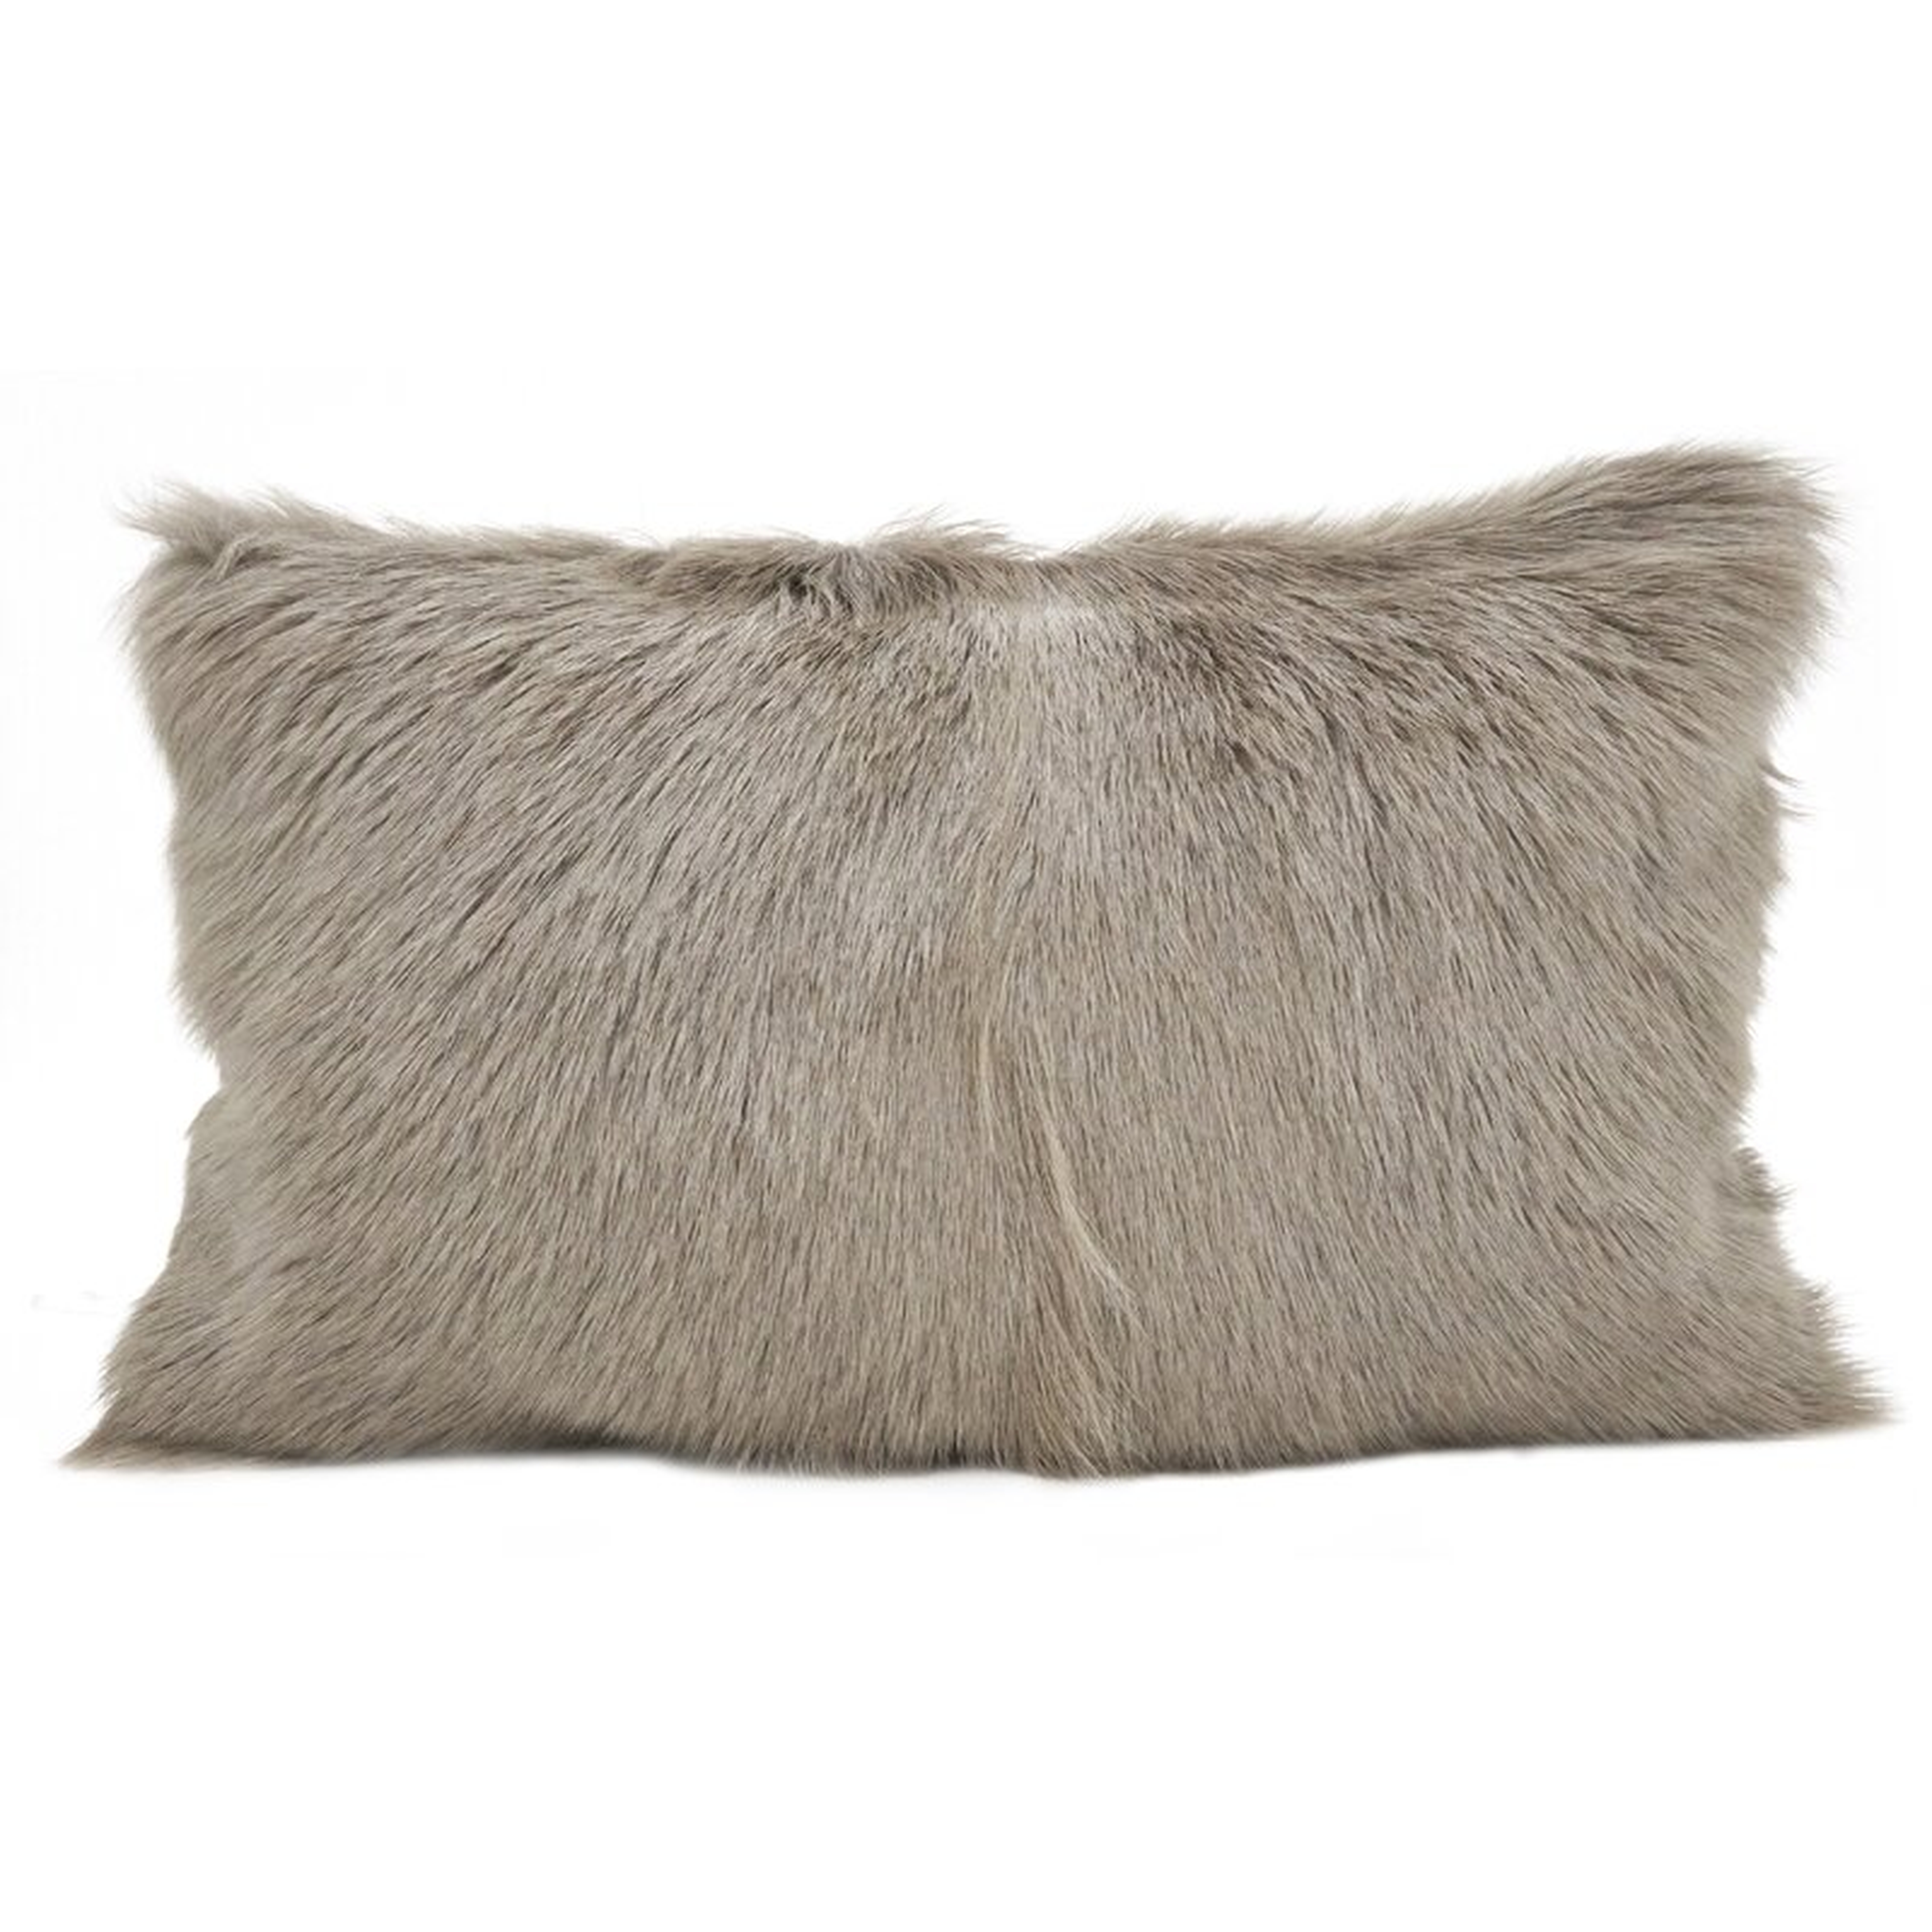 Oquinn Goat Fur :umbar Pillow - Wayfair